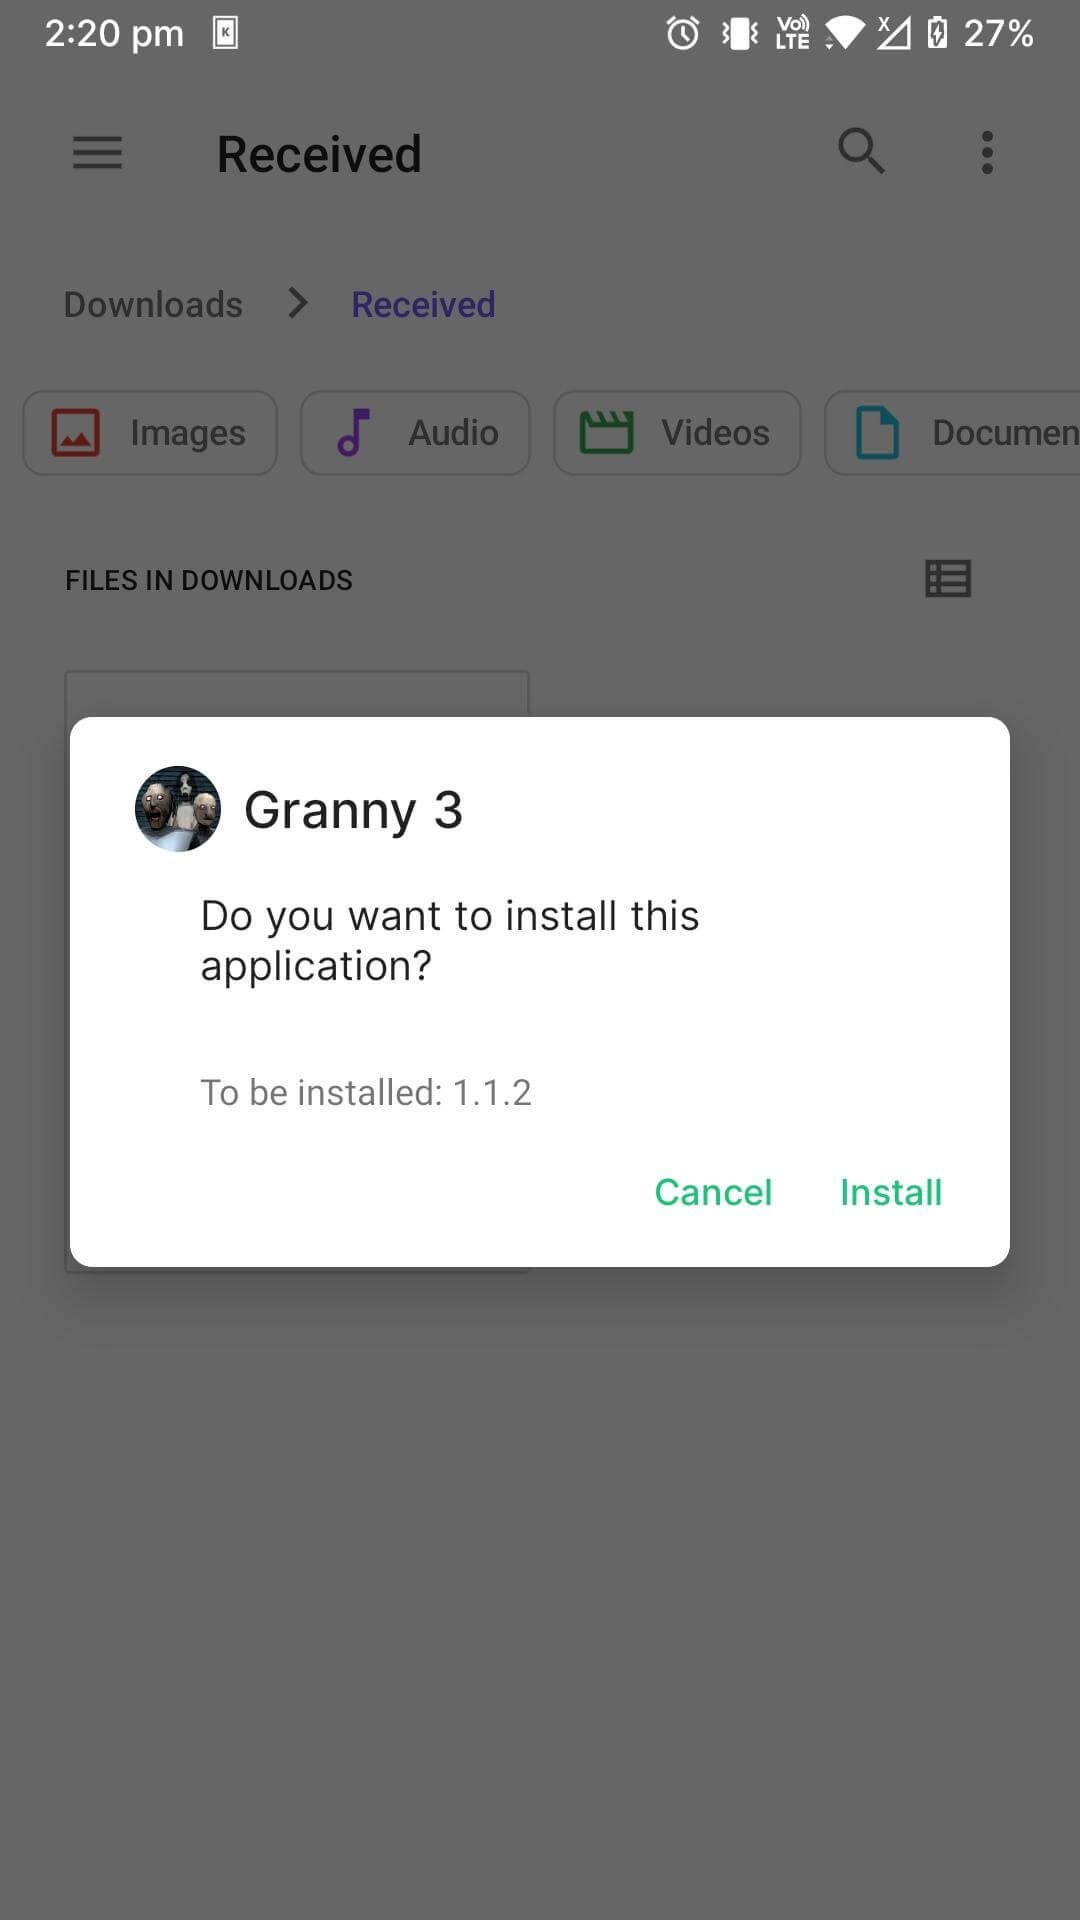 Download Granny 3 Mod Apk v1.1.3 For Android (Mod Menu)